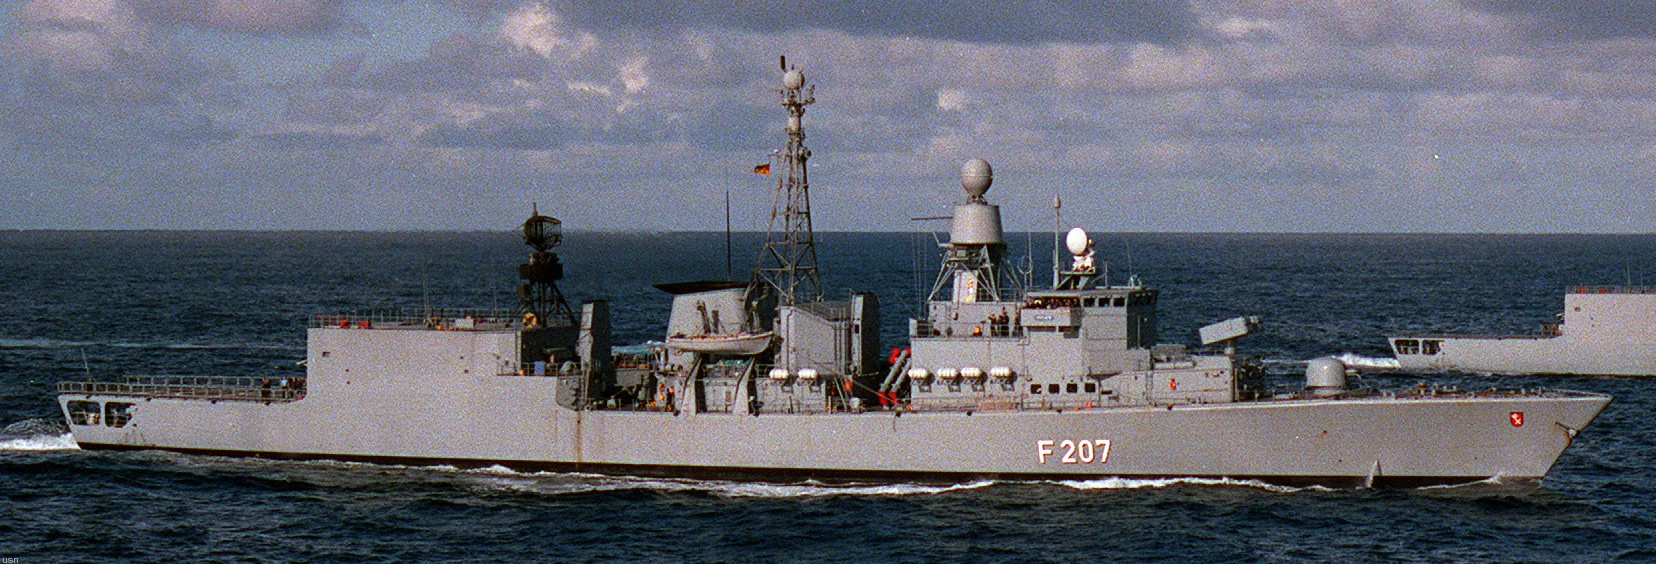 f-207 fgs bremen type 122 class frigate german navy 13